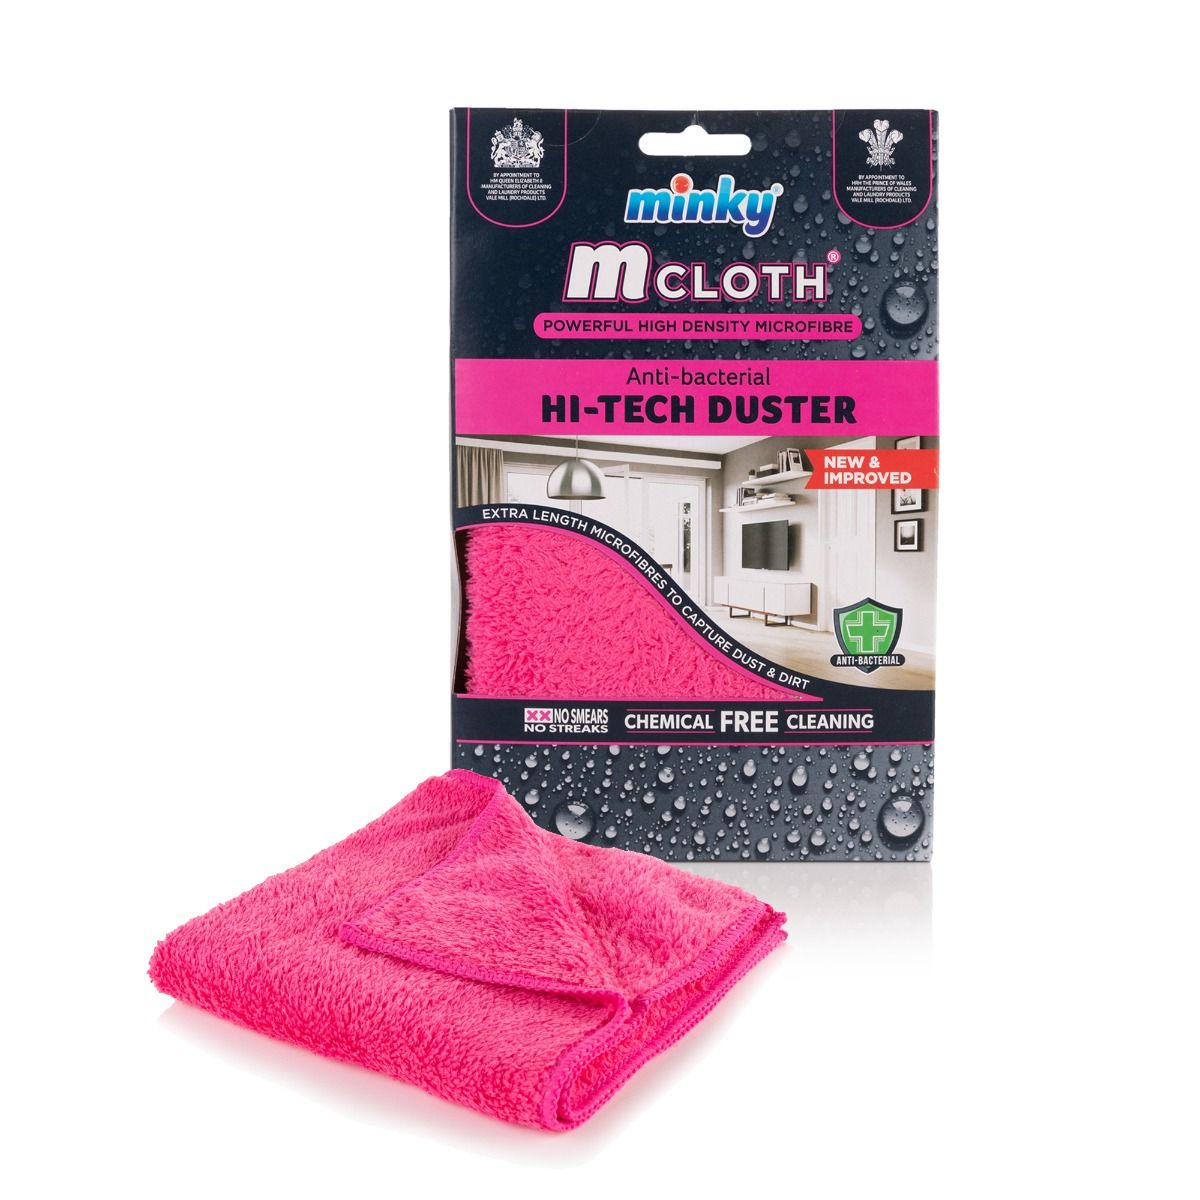 M Cloth Hi-Tech Duster